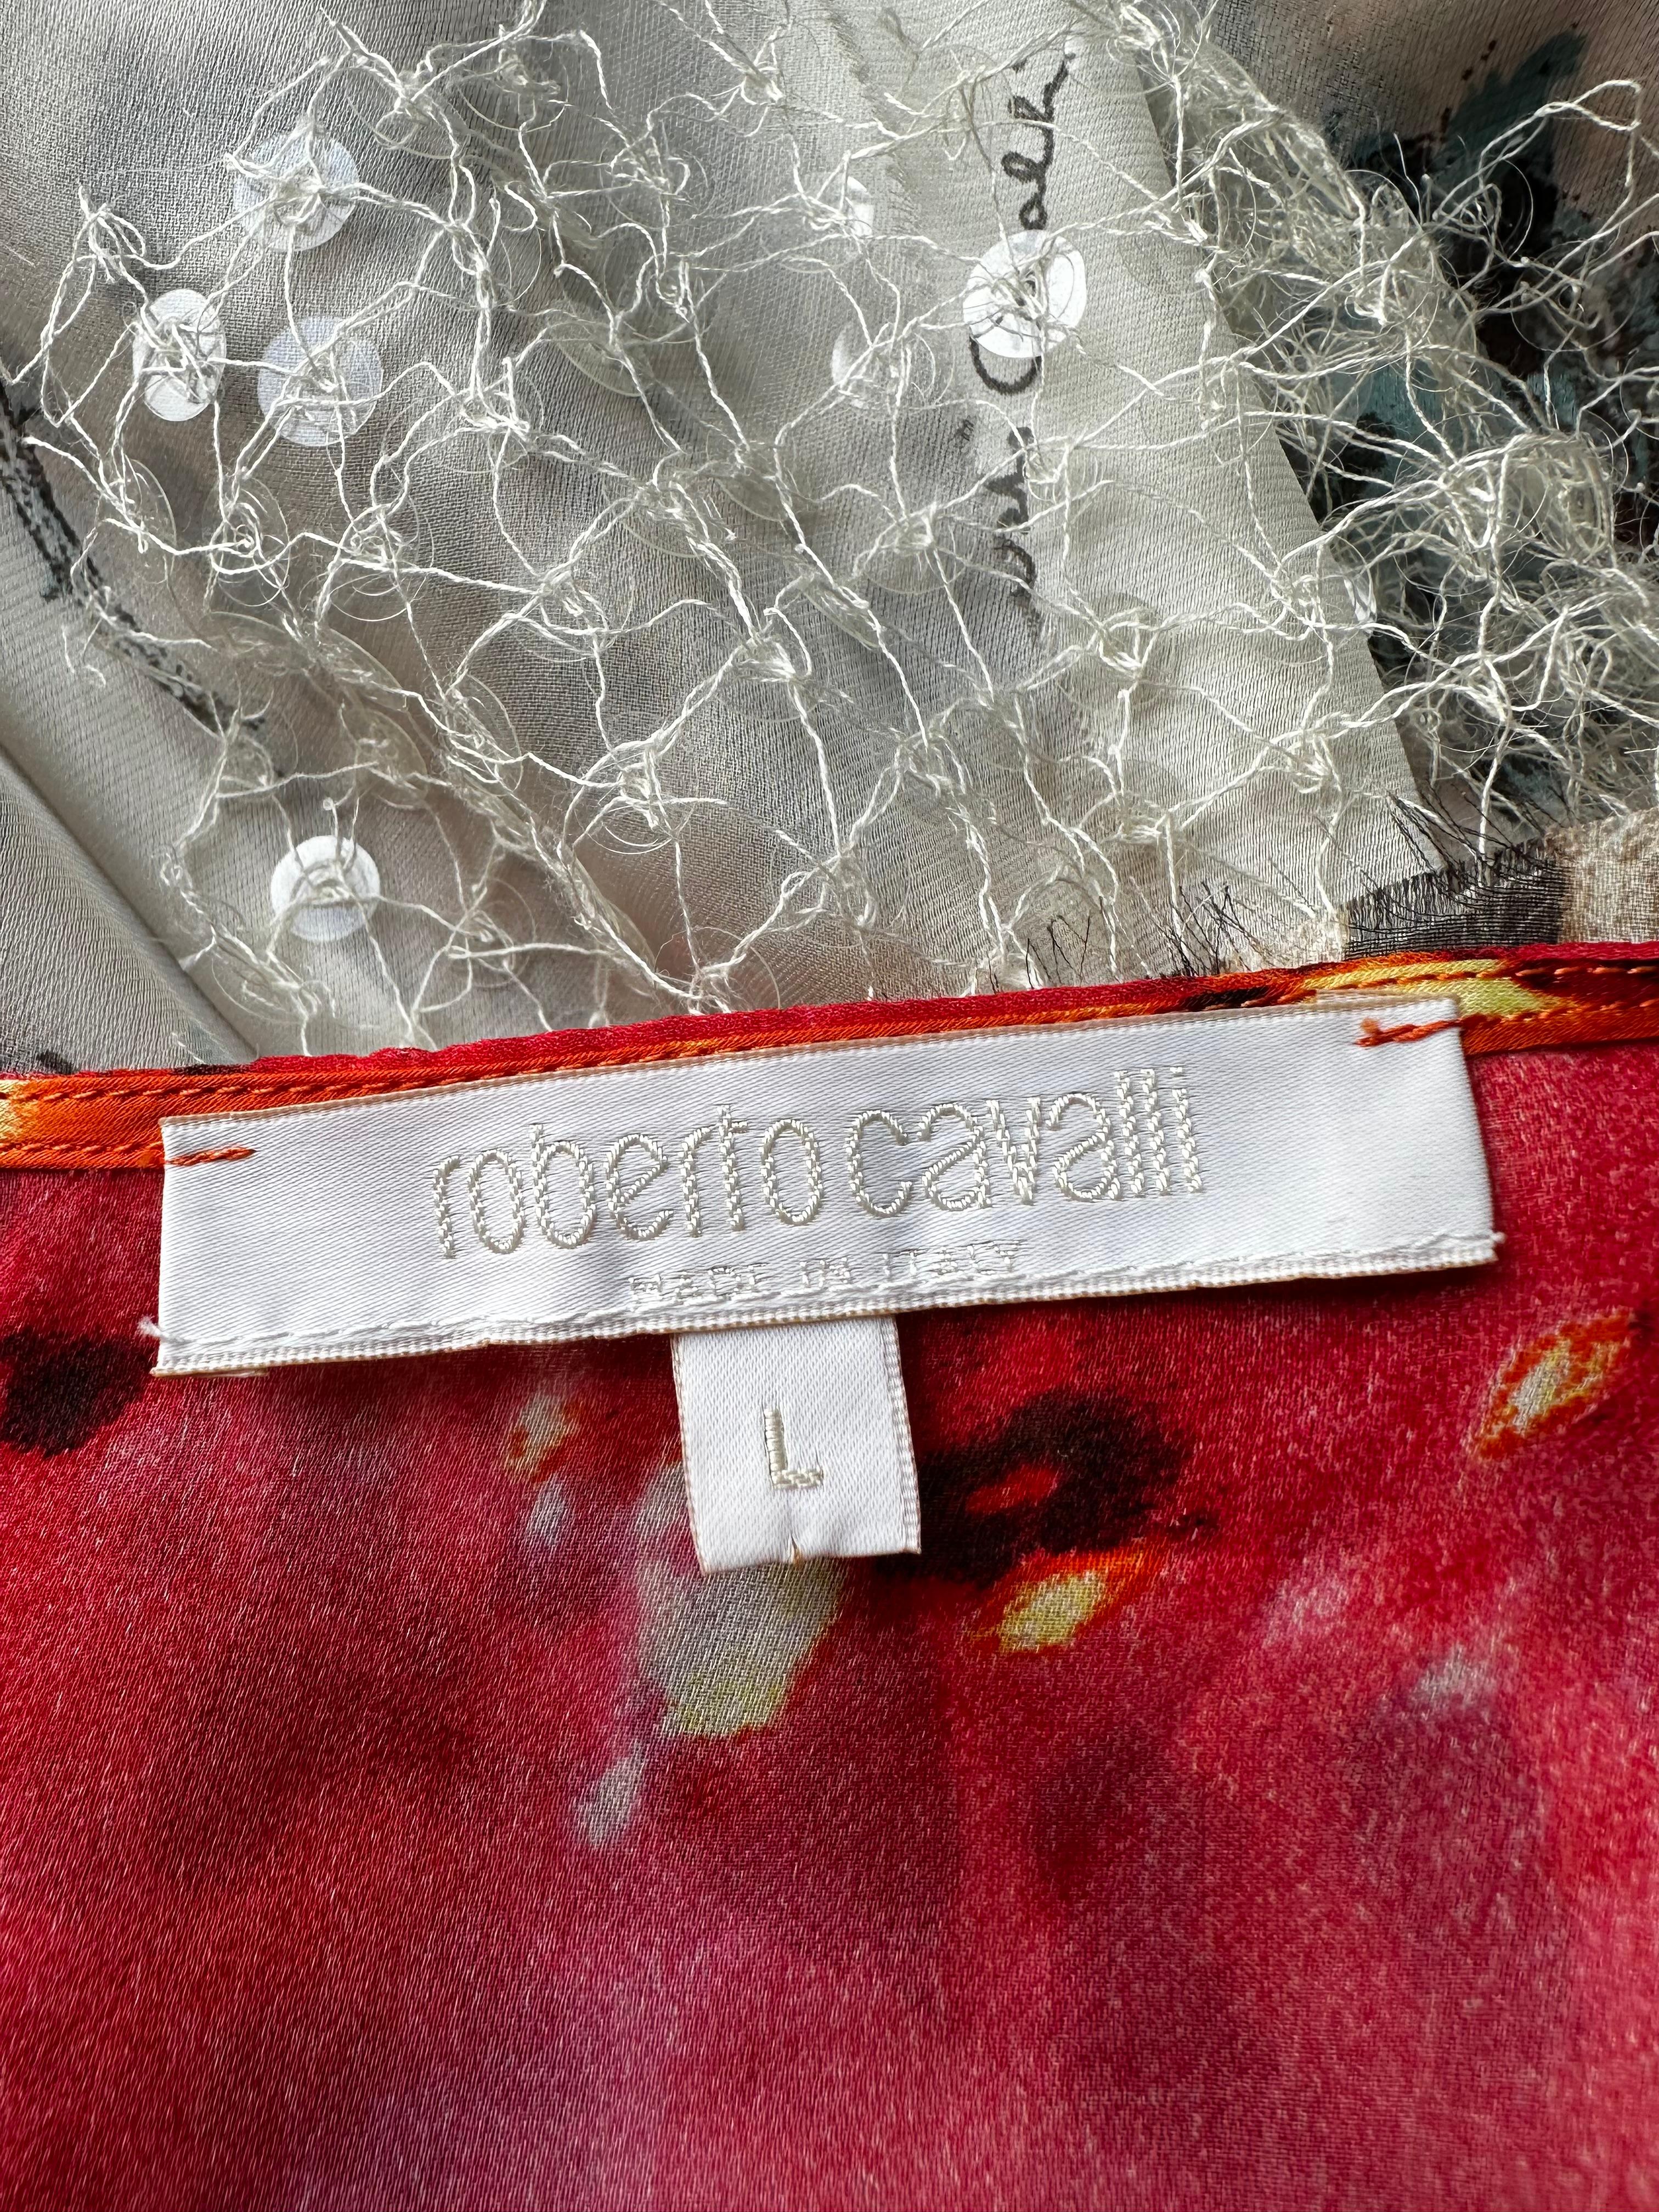 Mini robe en soie Roberto Cavalli 2002 Runway

Ourlet asymétrique et ornements en paillettes 

Bon état vintage, pas de déchirures ni de taches. Usure normale due à l'âge 

Taille sur l'étiquette L mais conviendrait à S/M.
Taille plate environ 14